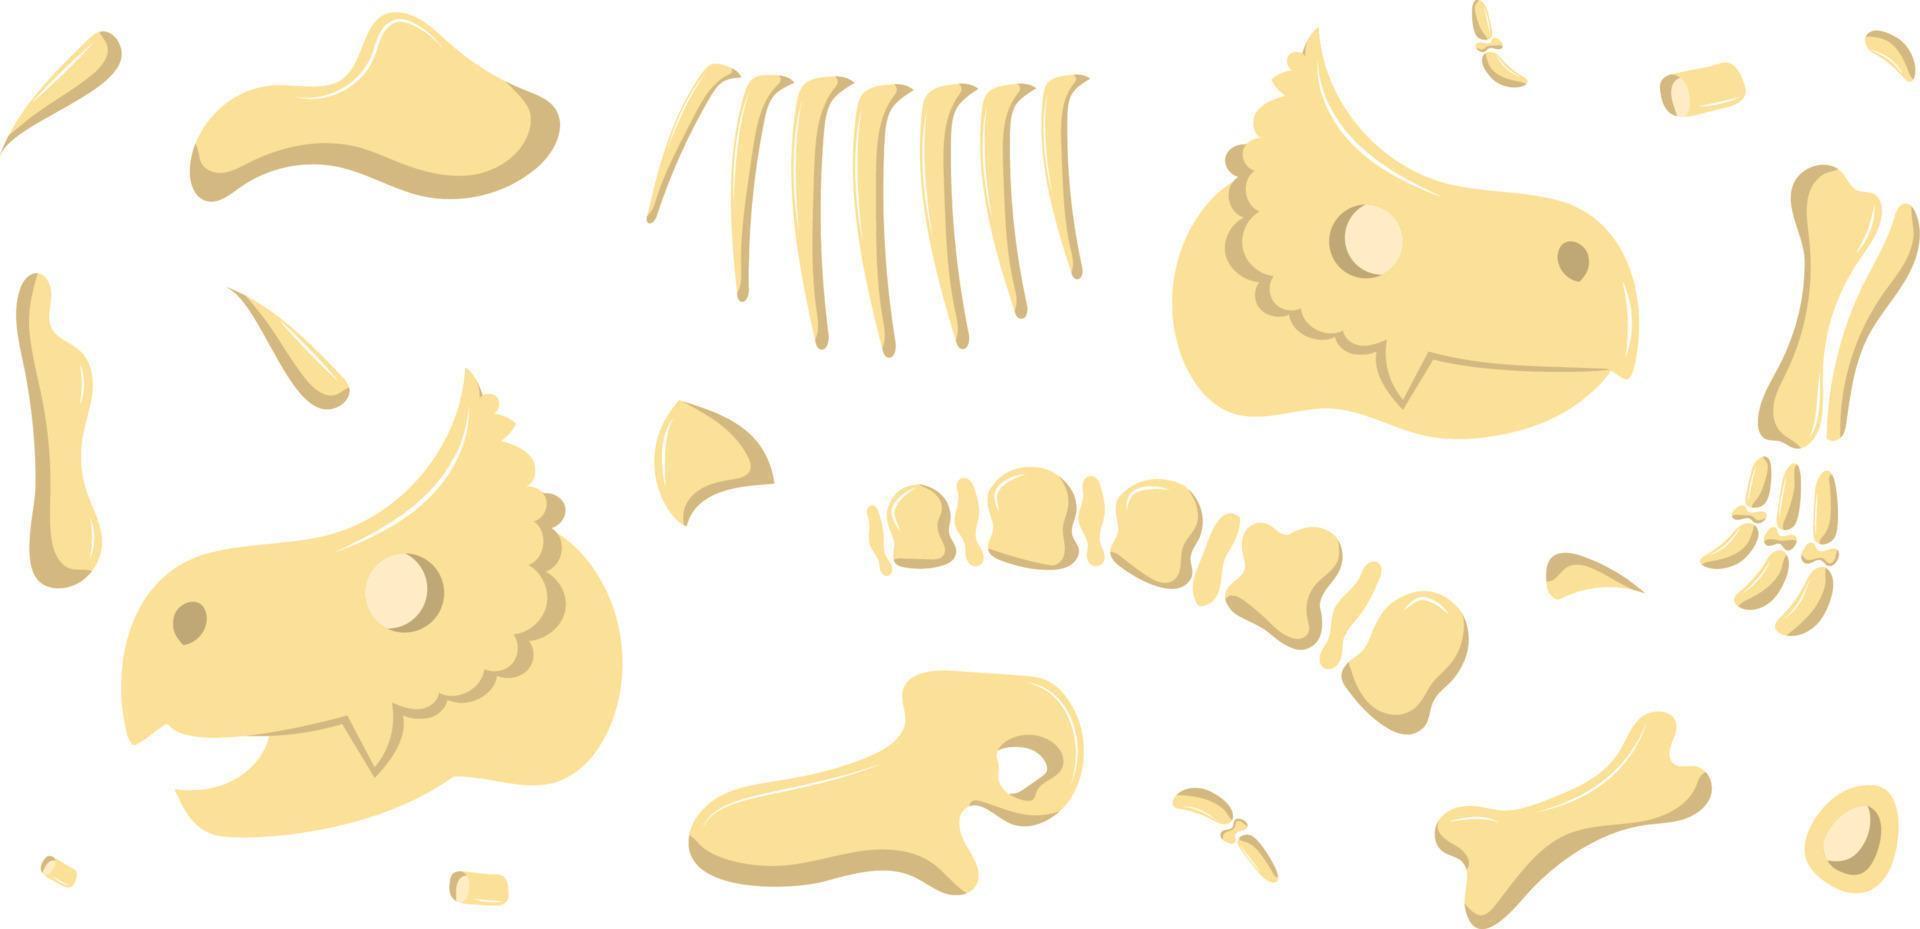 ossos de dinossauro são divididos em partes vetor